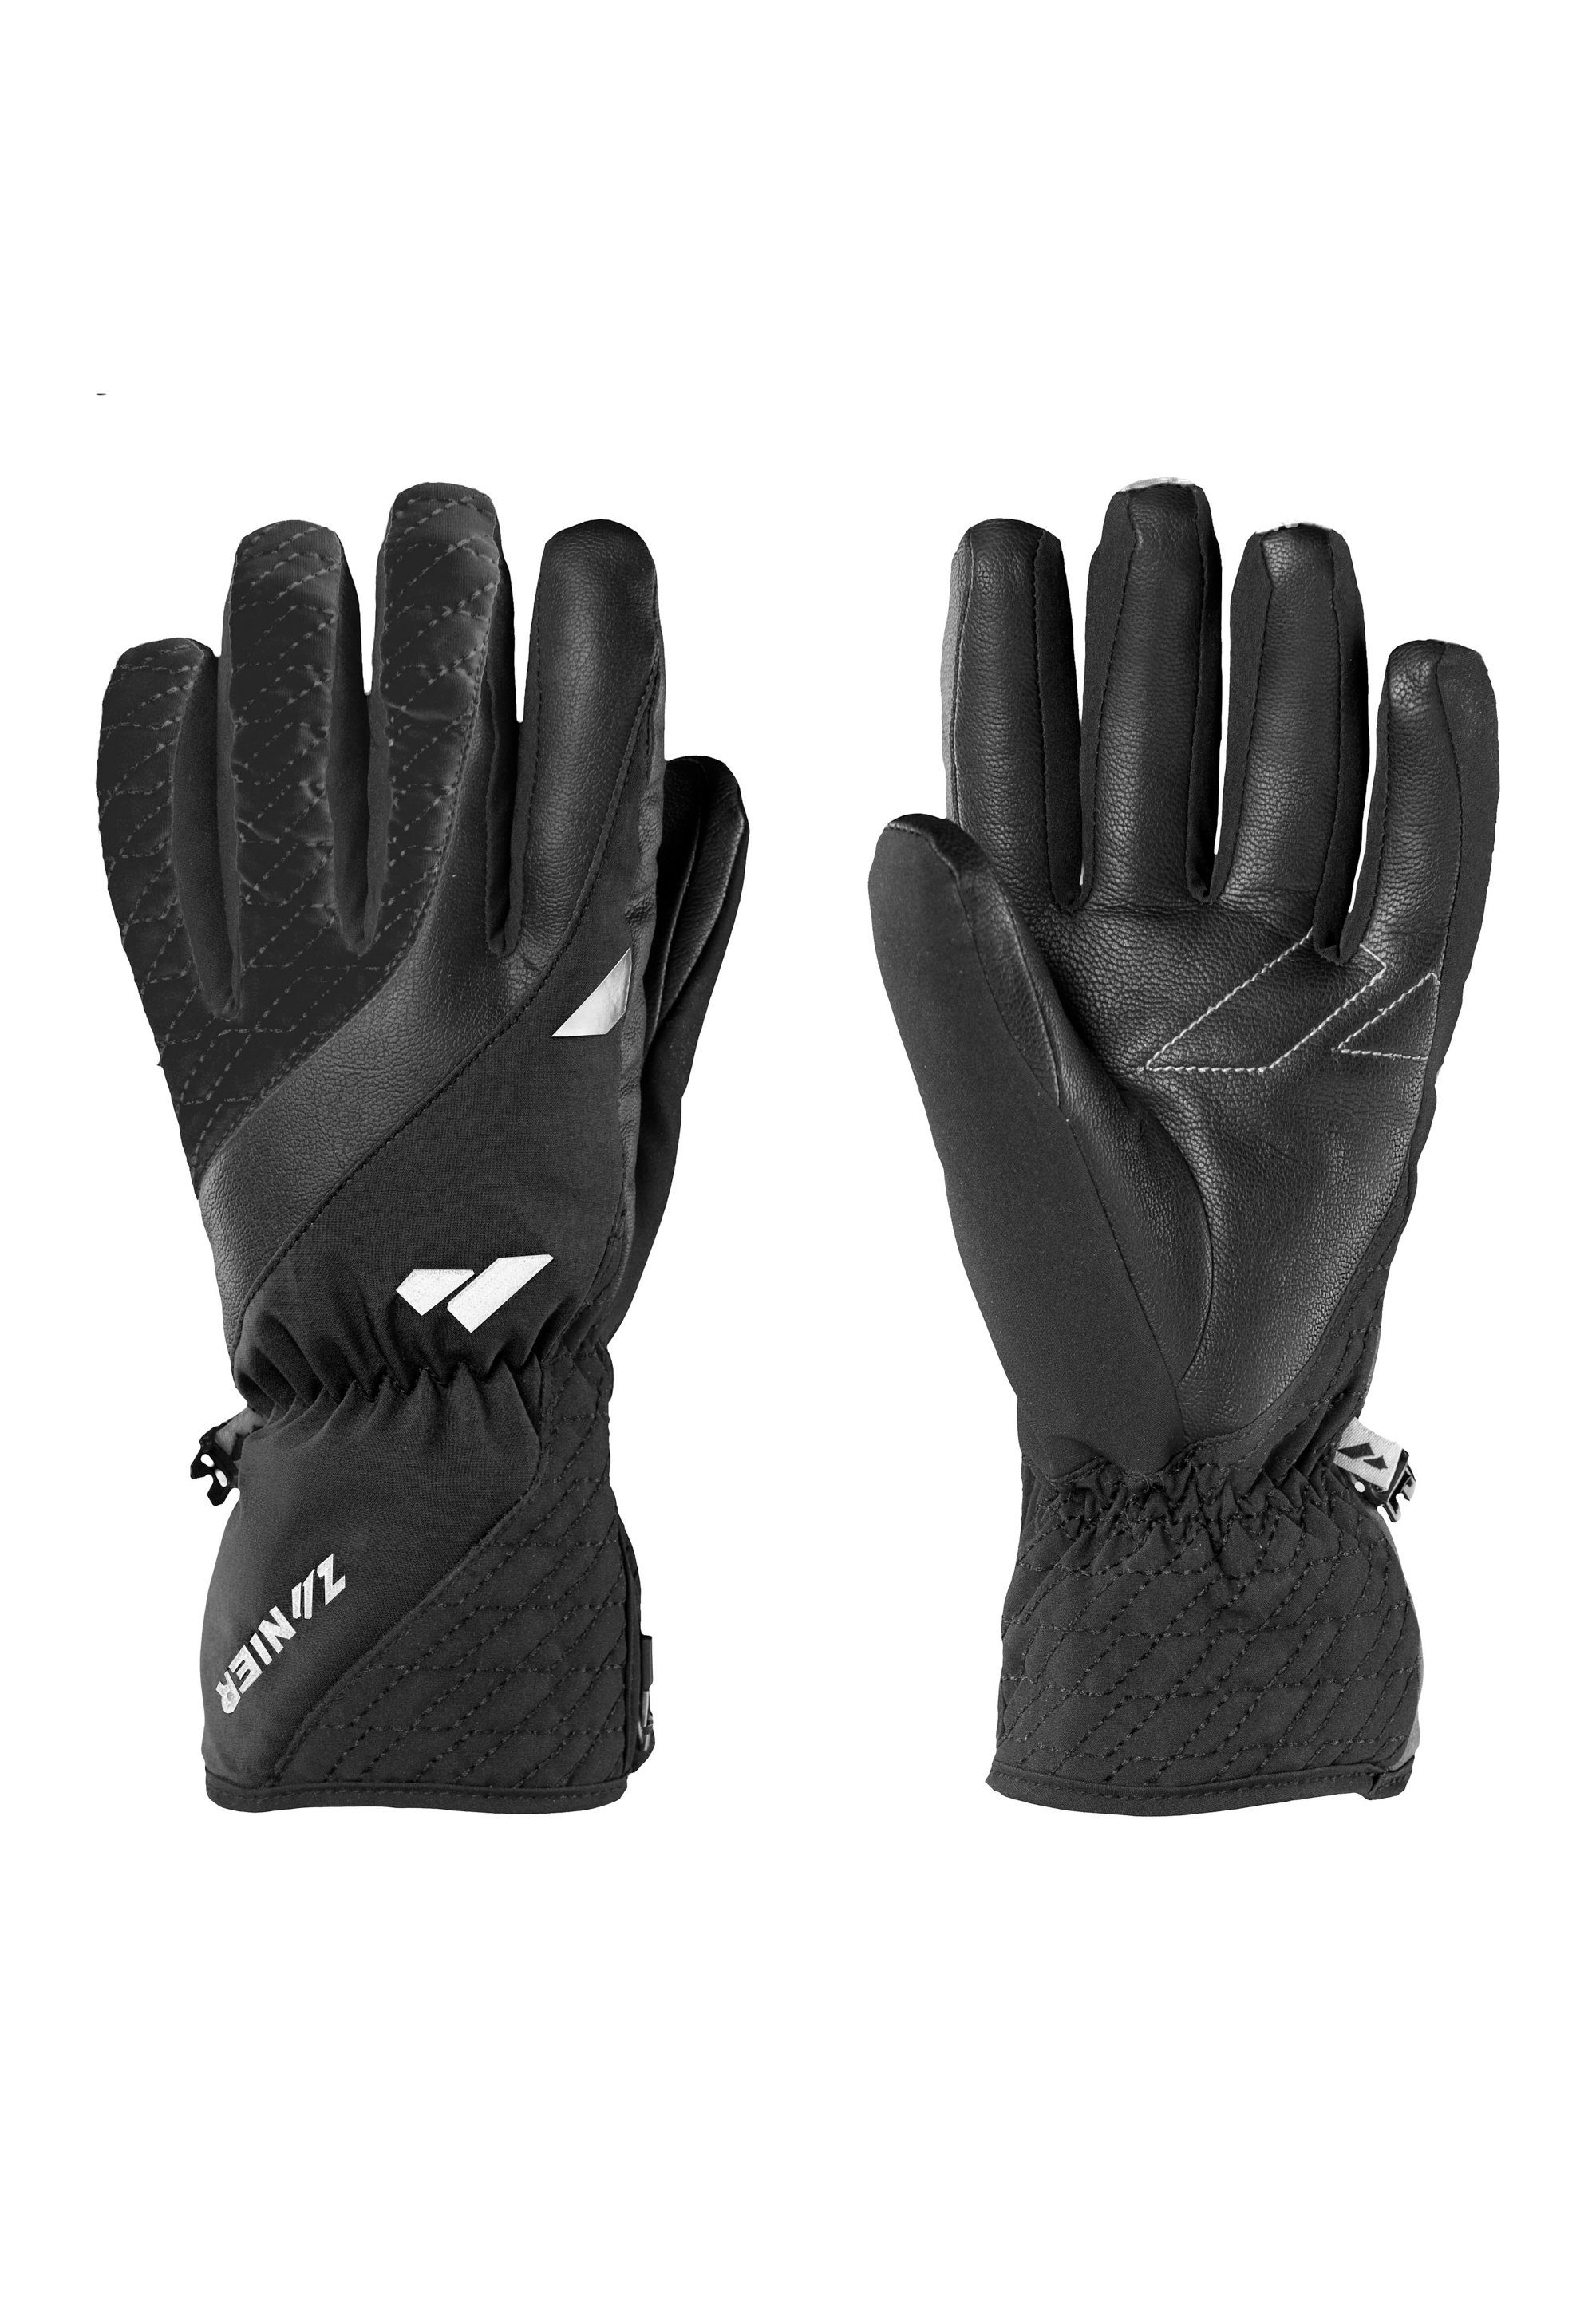 Zanier Multisporthandschuhe focus gloves on AURACH.GTX black We